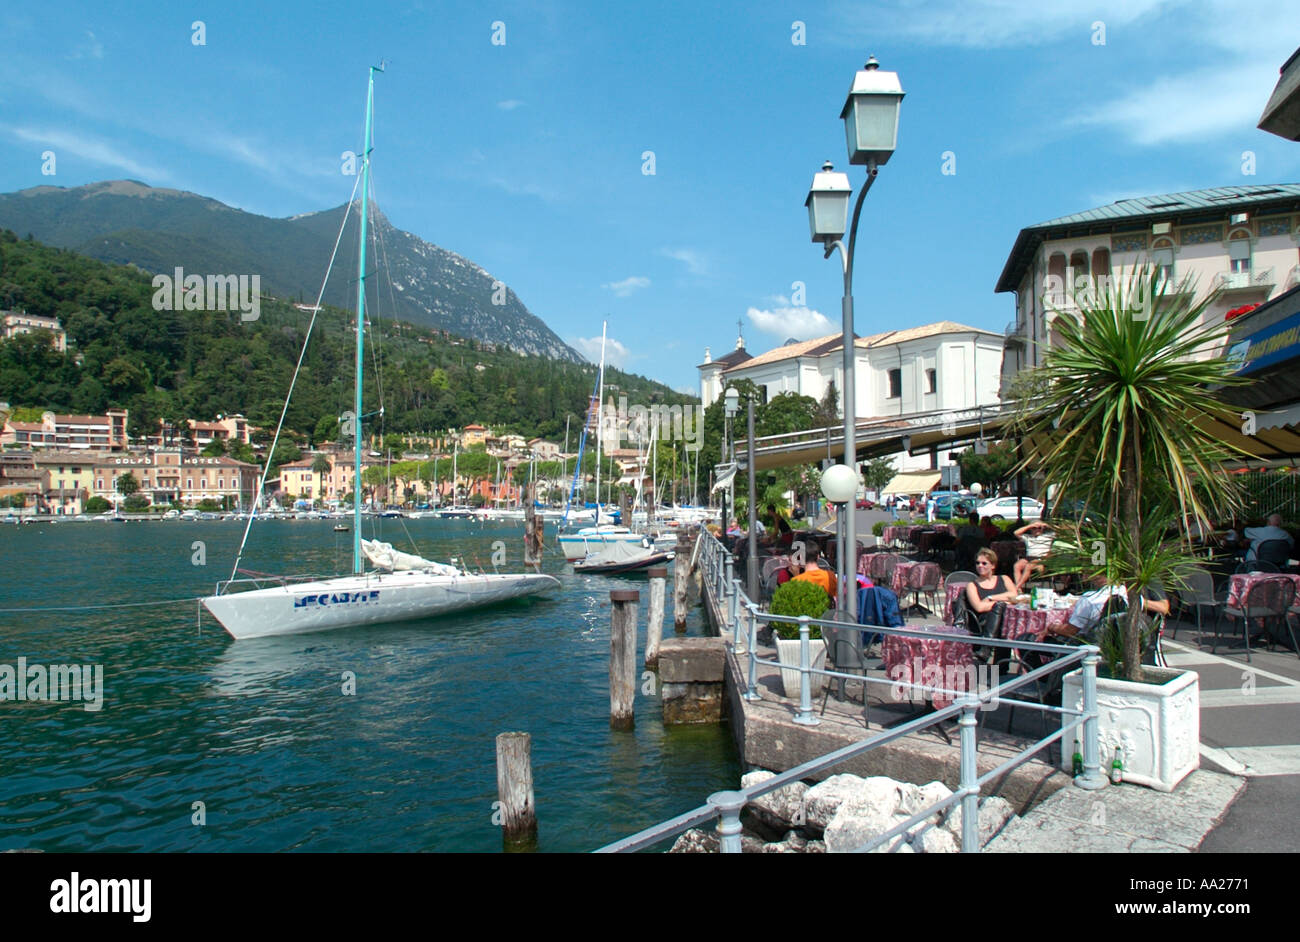 Cafe presso il porto di Maderno, Lago di Garda, Italia Foto Stock